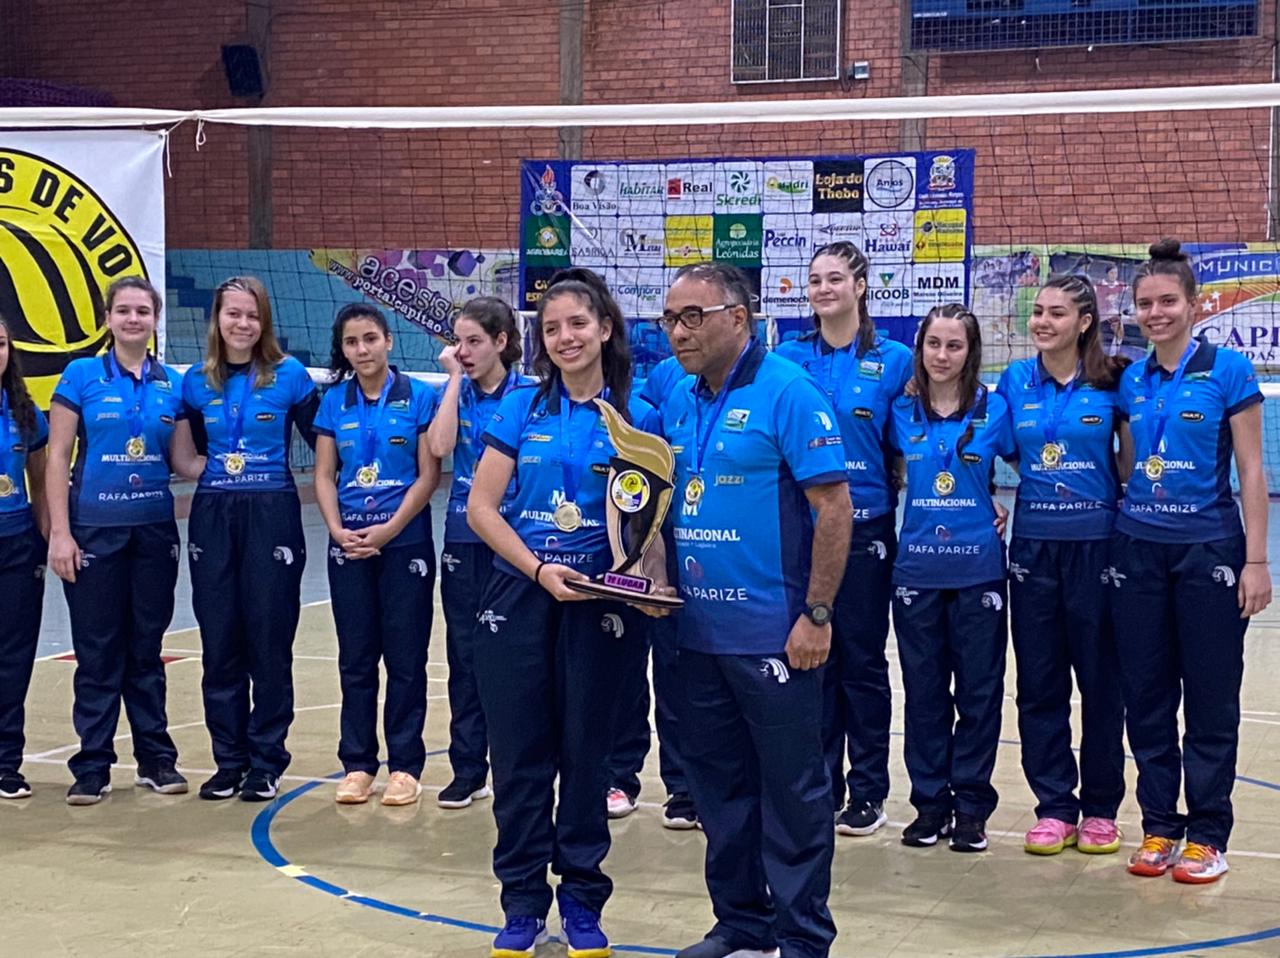 Sogipa: Com campanha quase perfeita, time sub-16 de vôlei feminino da Sogipa  termina Copa RS na segunda posição